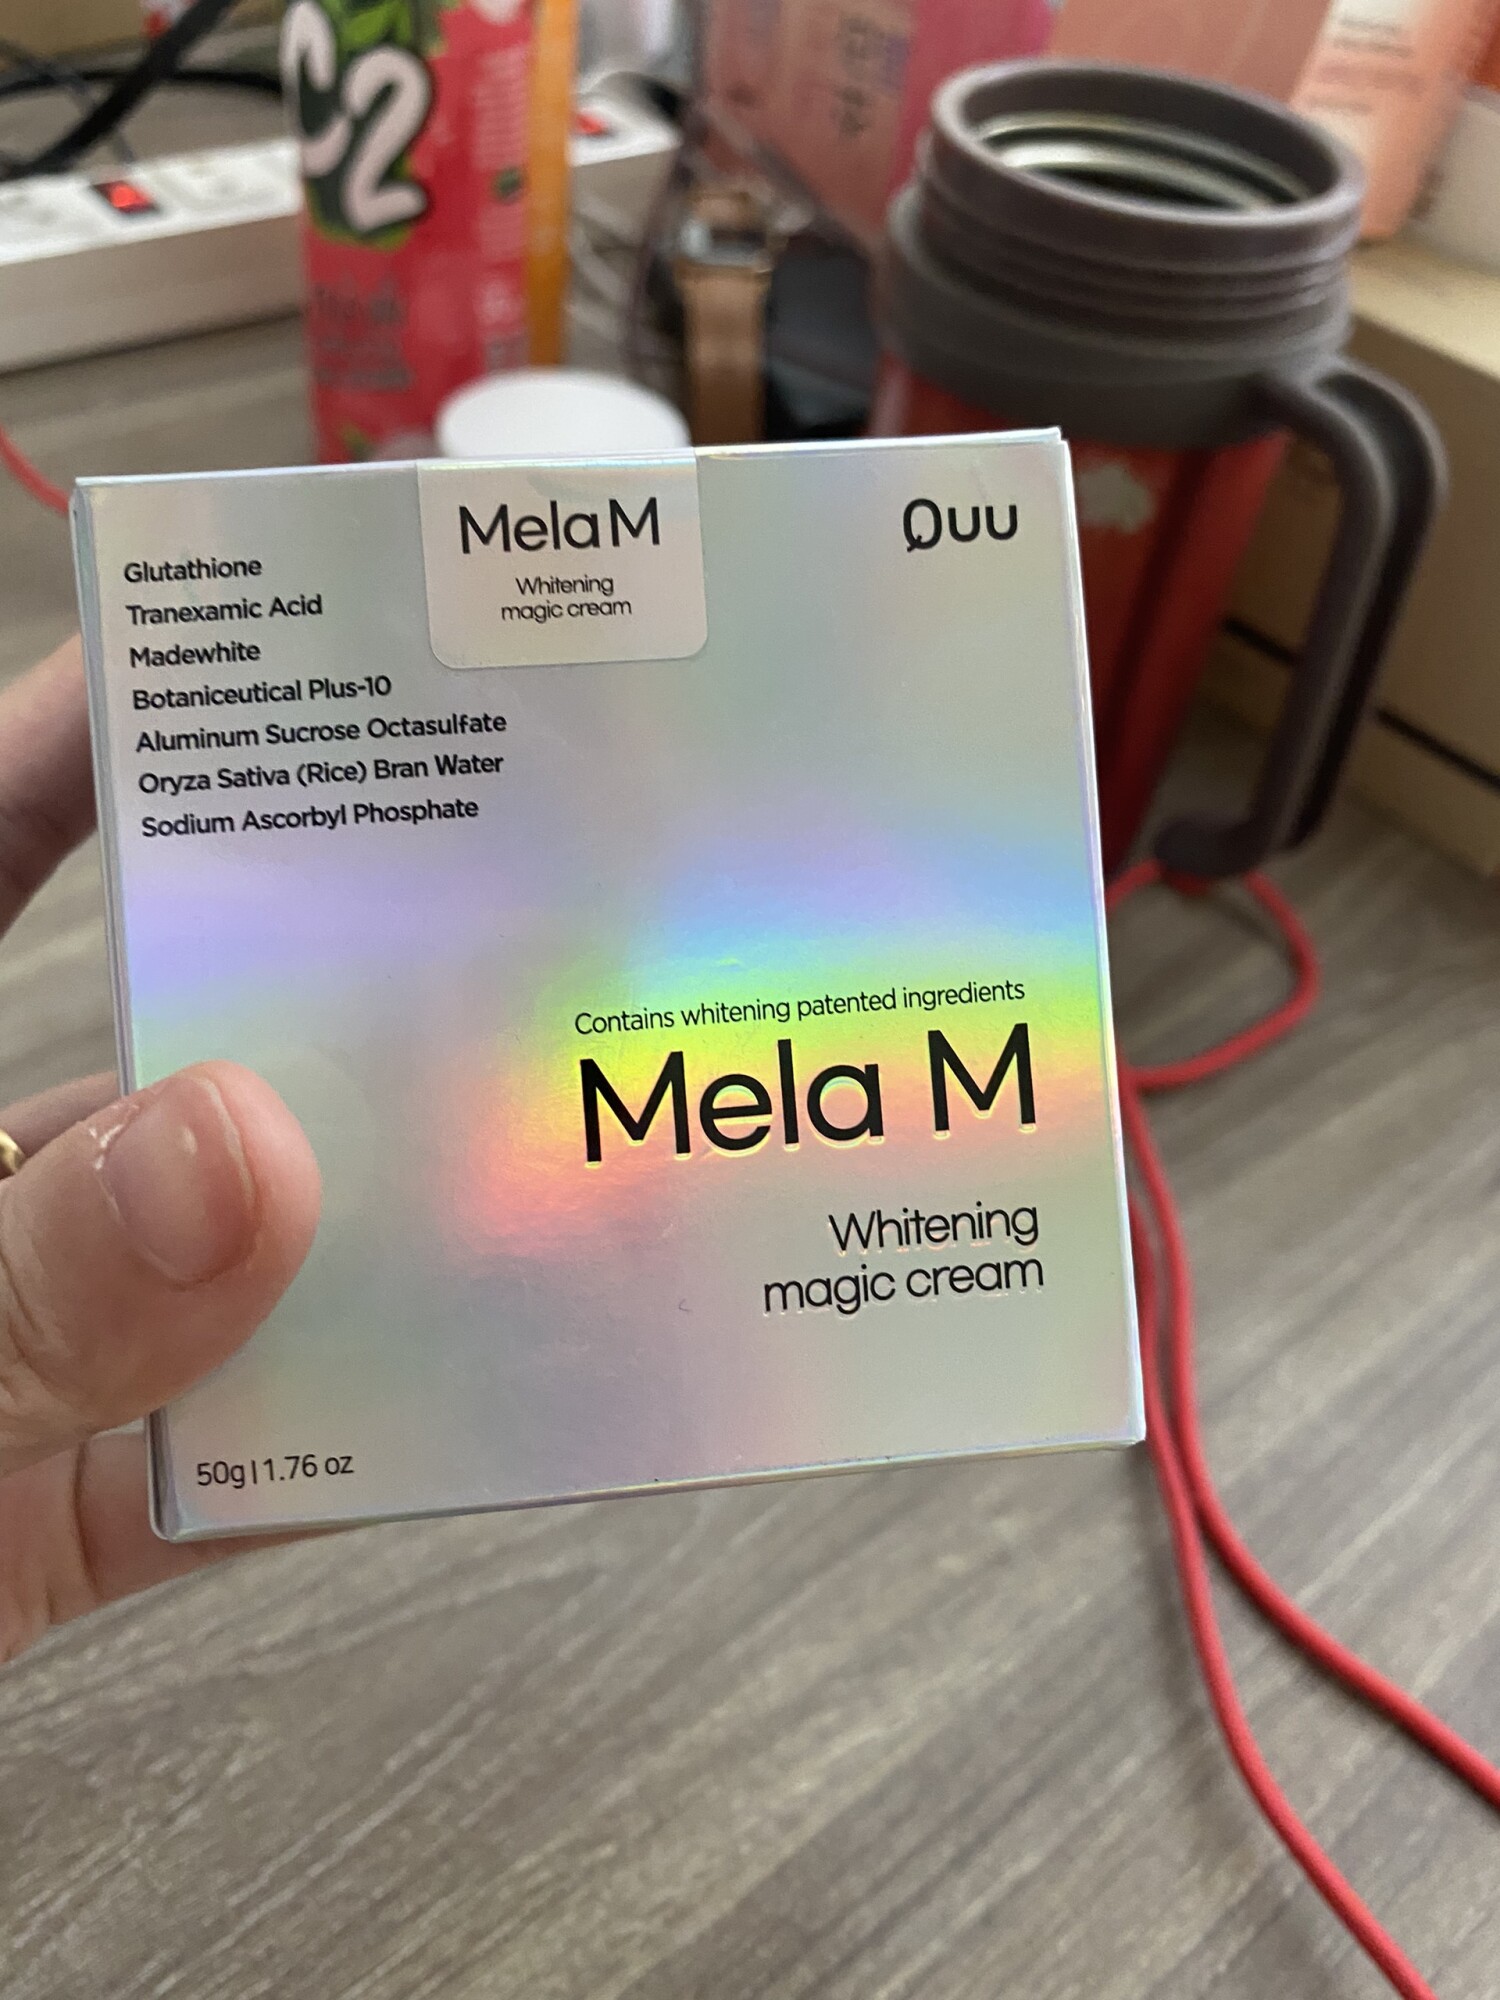 Kem nám Mela M - Mẫu mới của dòng kem nám Mela Q